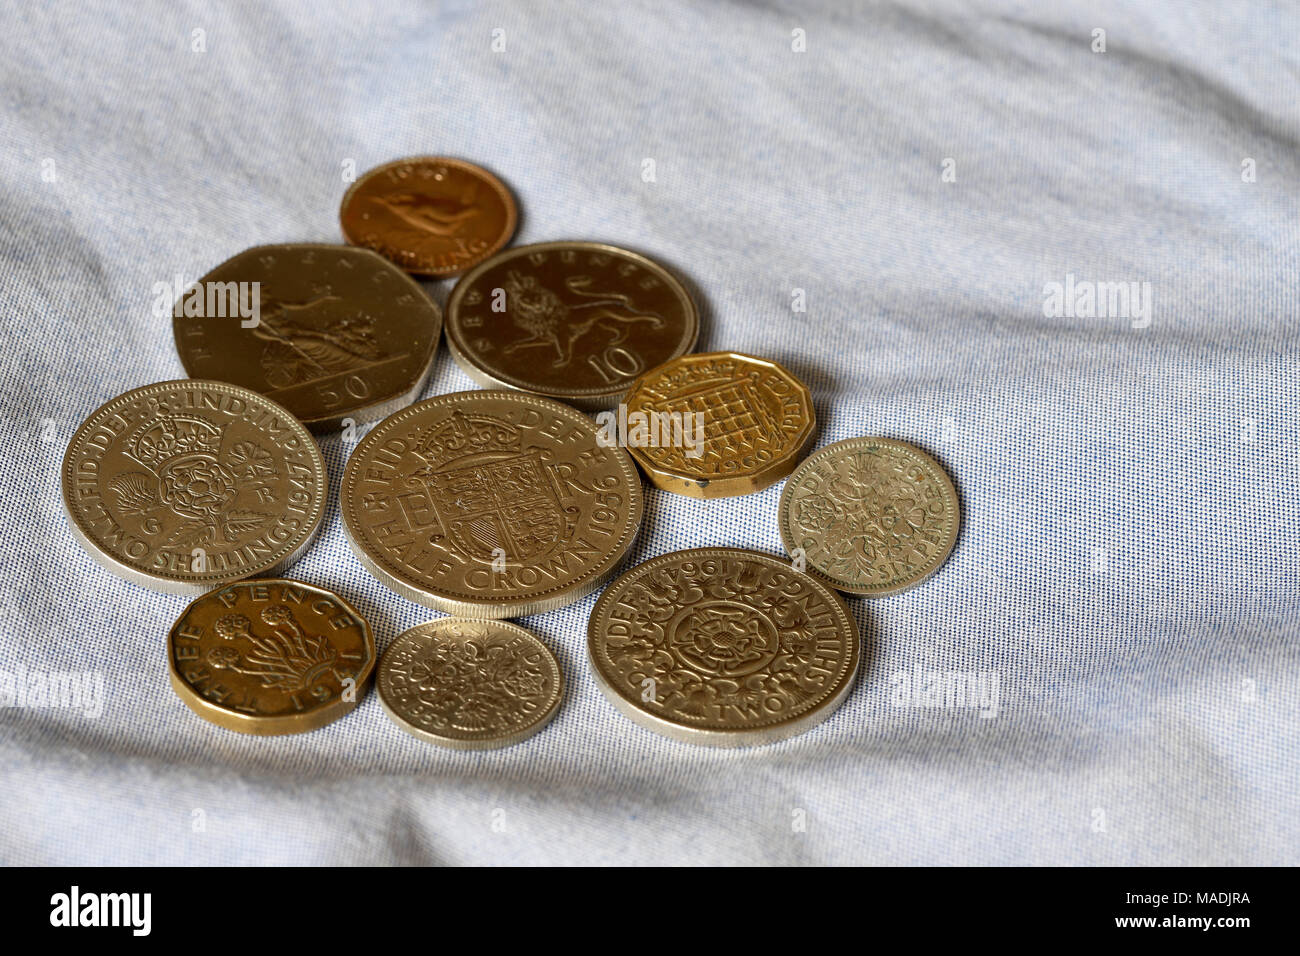 Die britische Identität und Nostalgie für die Vergangenheit. Münzen aus der Dezimal- und frühen dezimal Epochen einschließlich der Hälfte der Krone und zwei shilling Stücke. Stockfoto